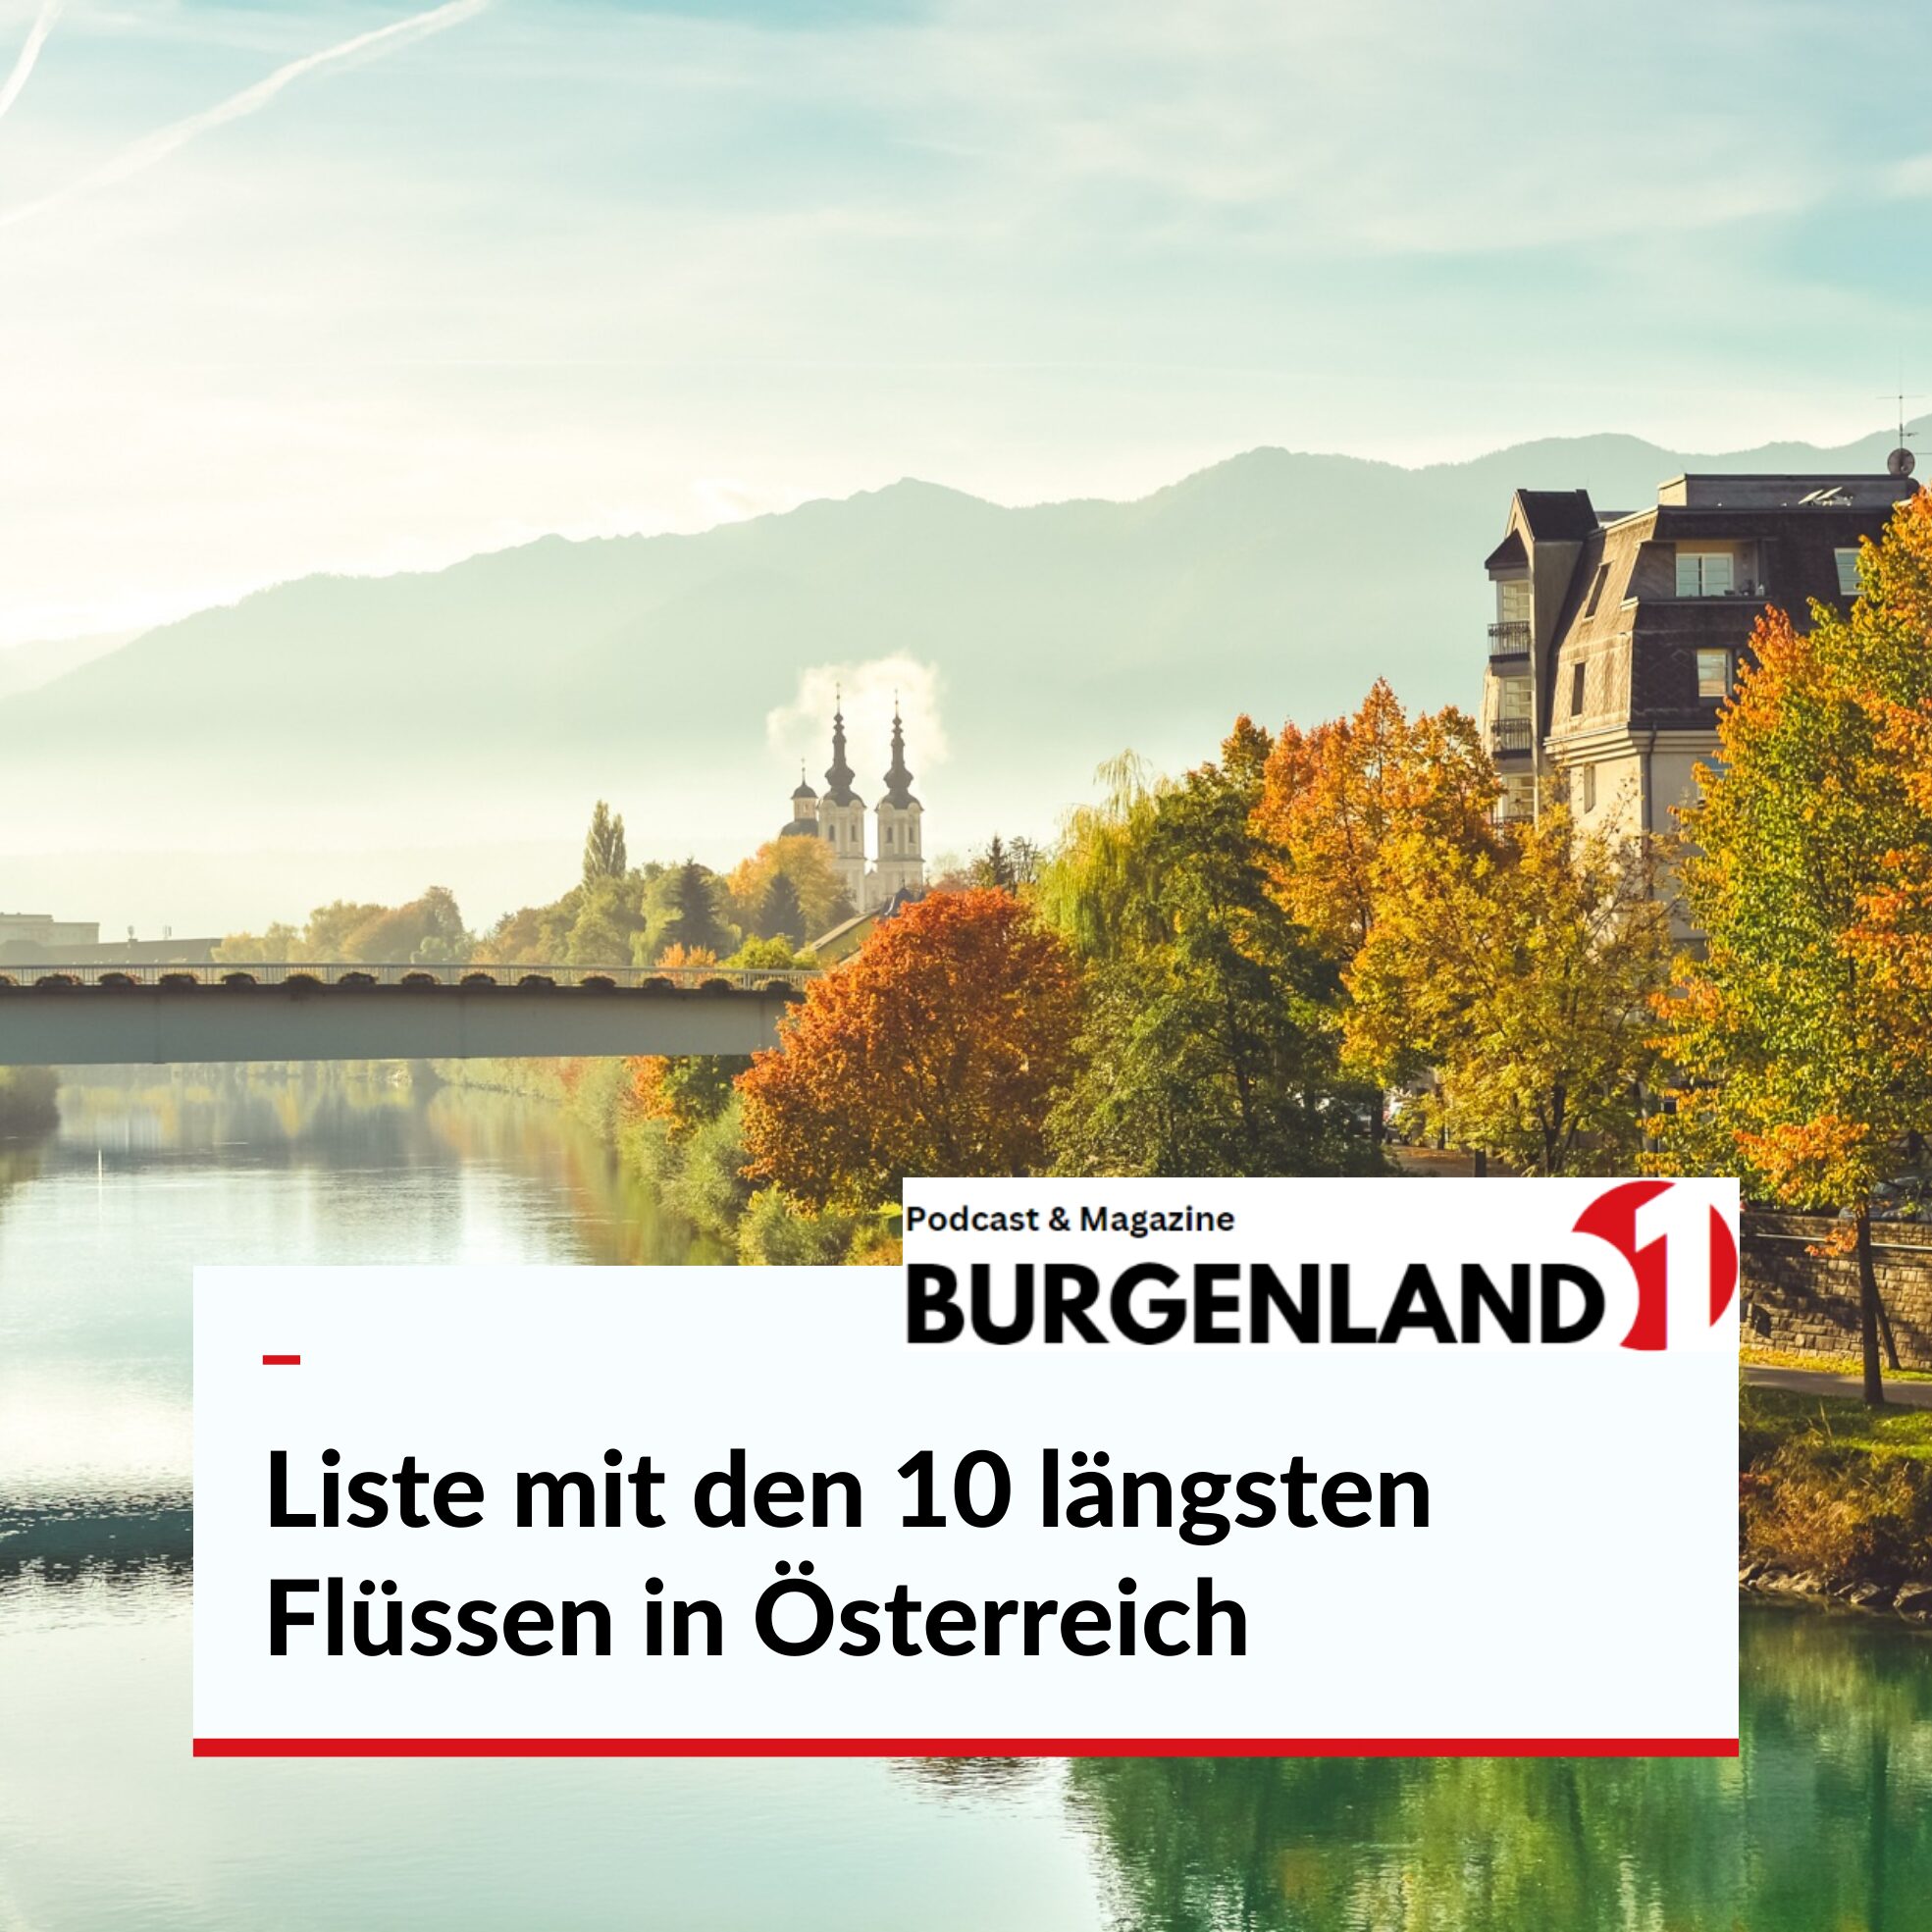 Liste mit den 10 längsten Flüssen in Österreich